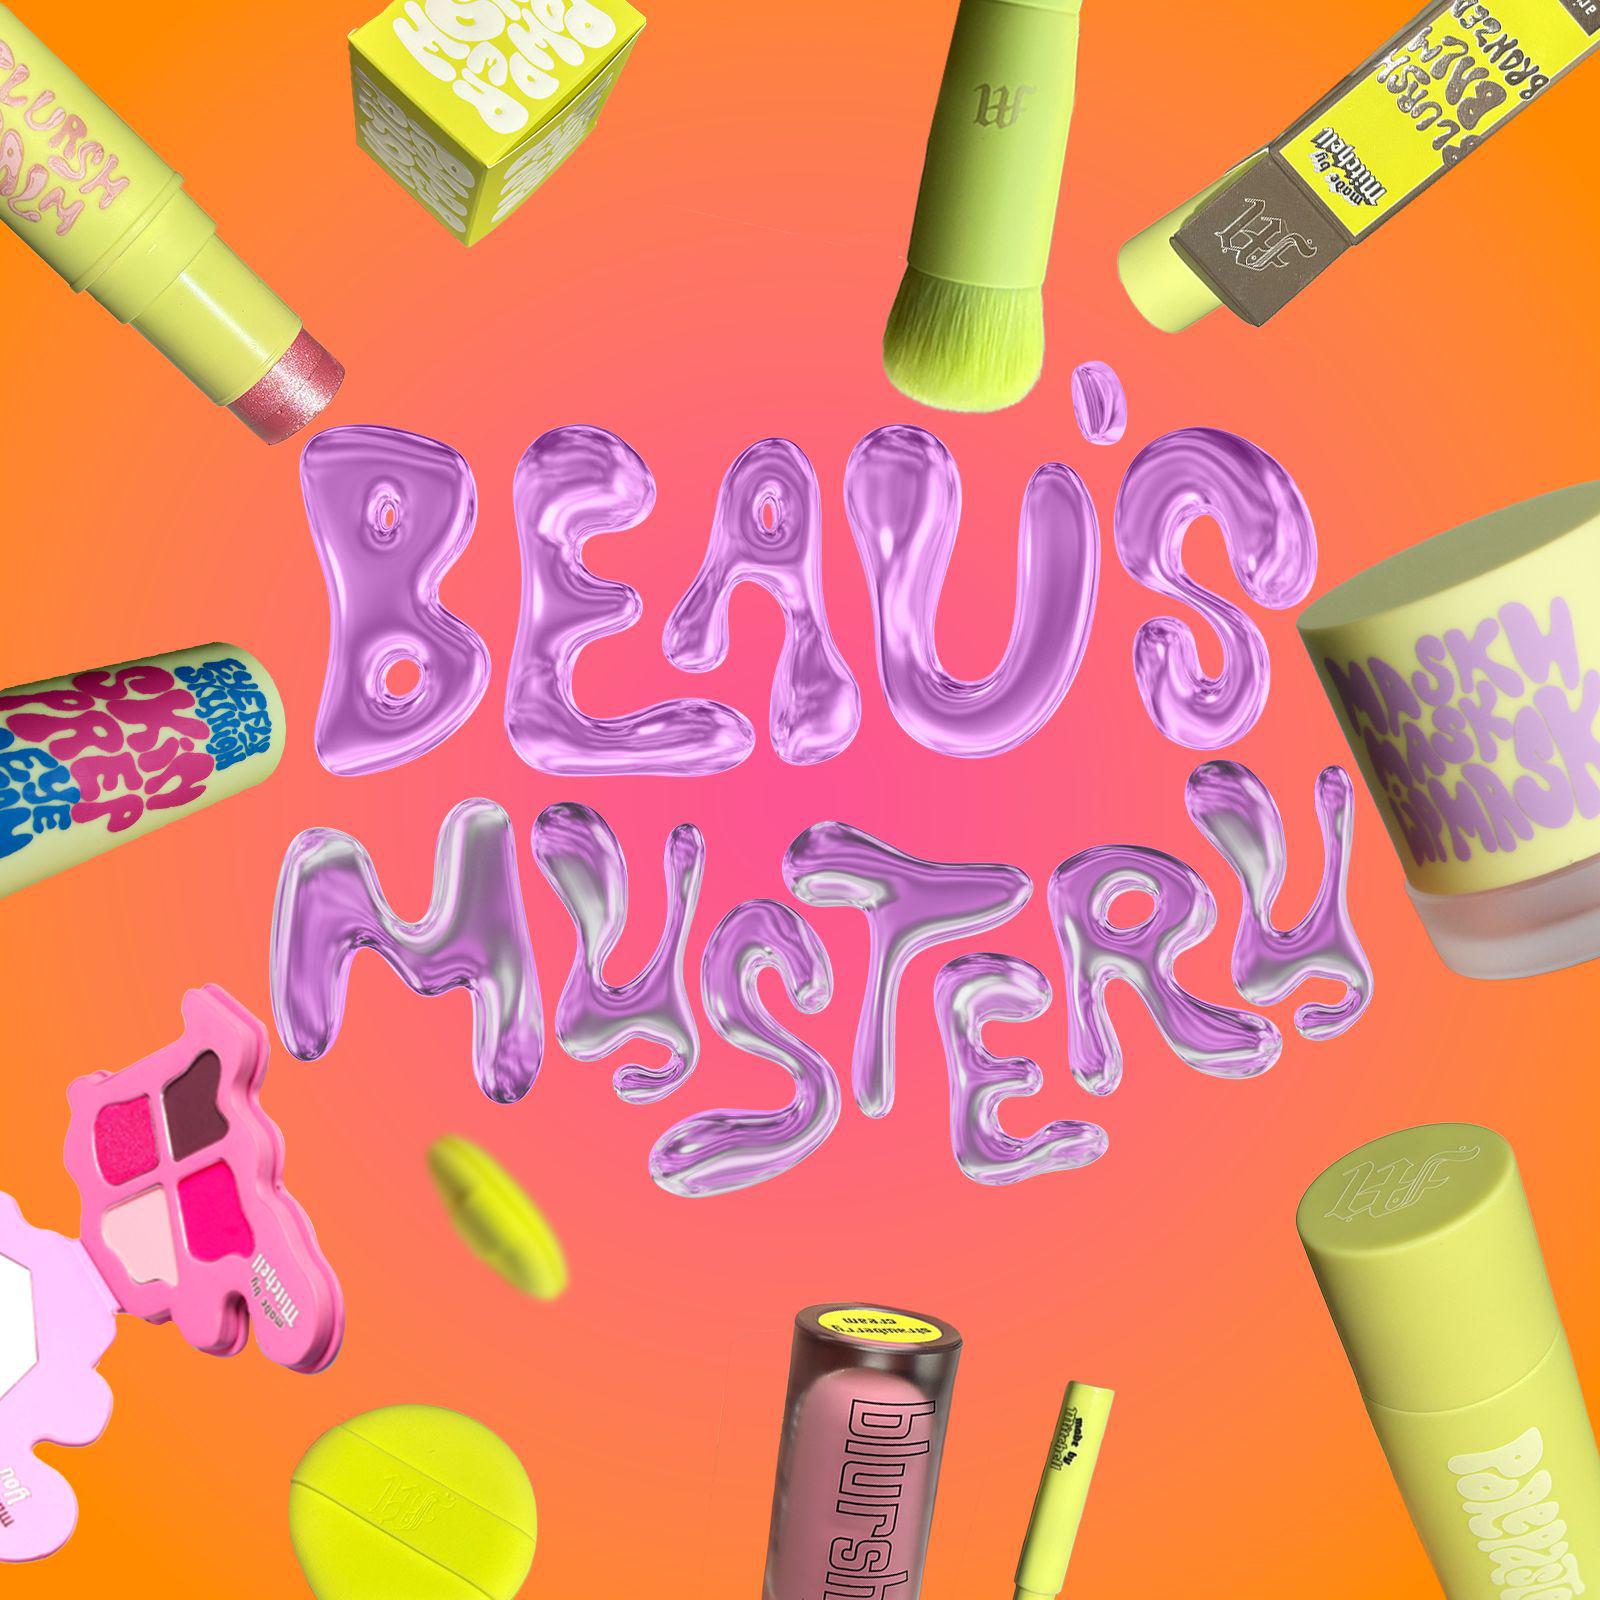 Beau's Makeup Mystery